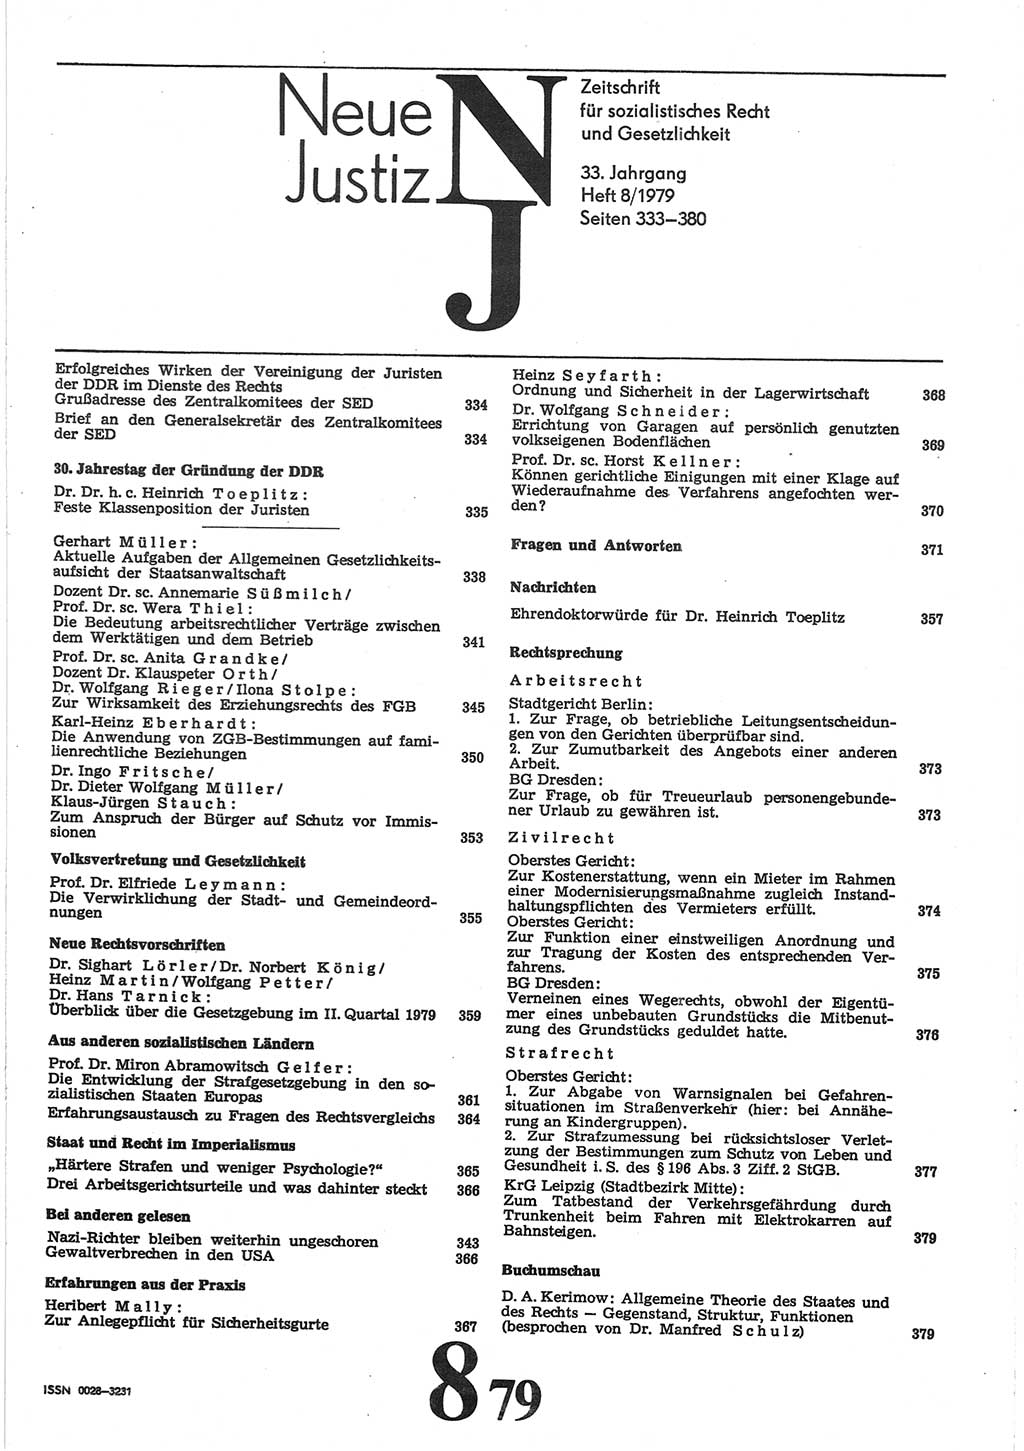 Neue Justiz (NJ), Zeitschrift für sozialistisches Recht und Gesetzlichkeit [Deutsche Demokratische Republik (DDR)], 33. Jahrgang 1979, Seite 333 (NJ DDR 1979, S. 333)